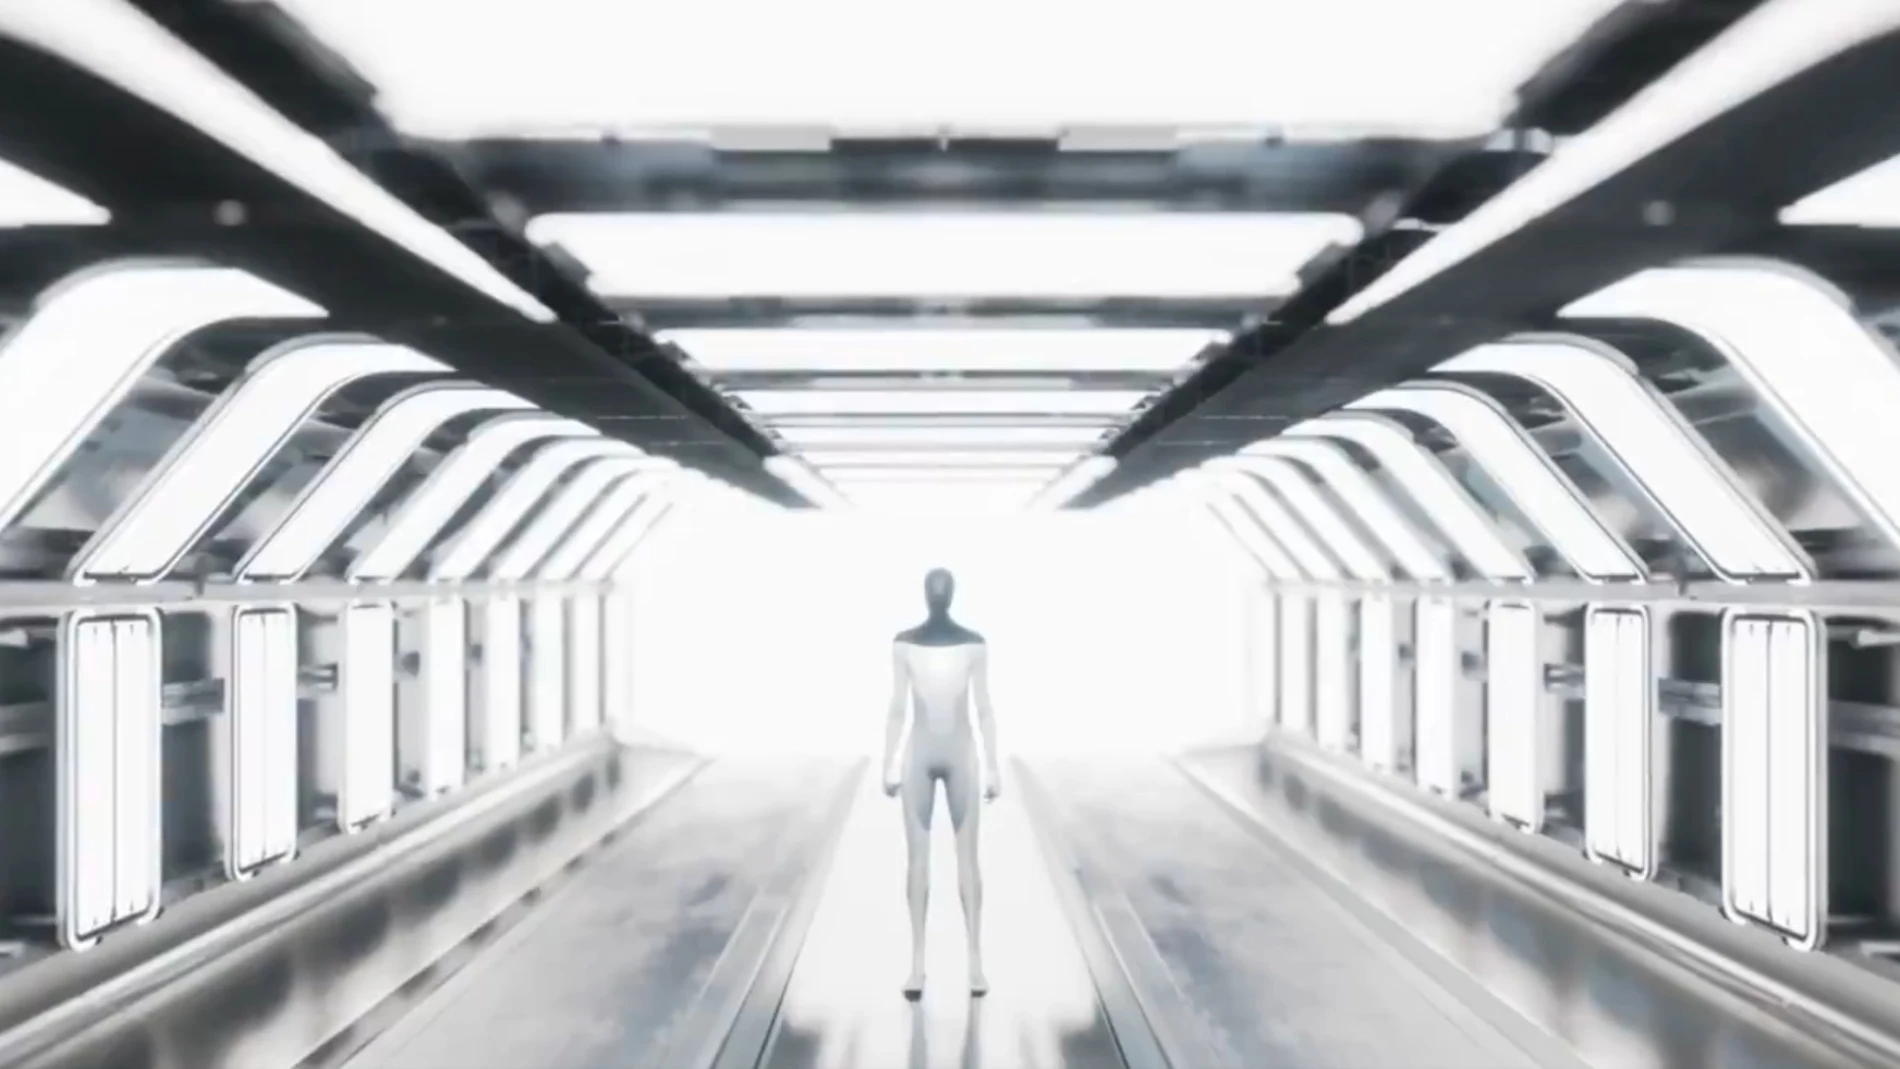 Imagen del prototipo del robot humanoide en el que trabaja la compañía de Elon Musk.